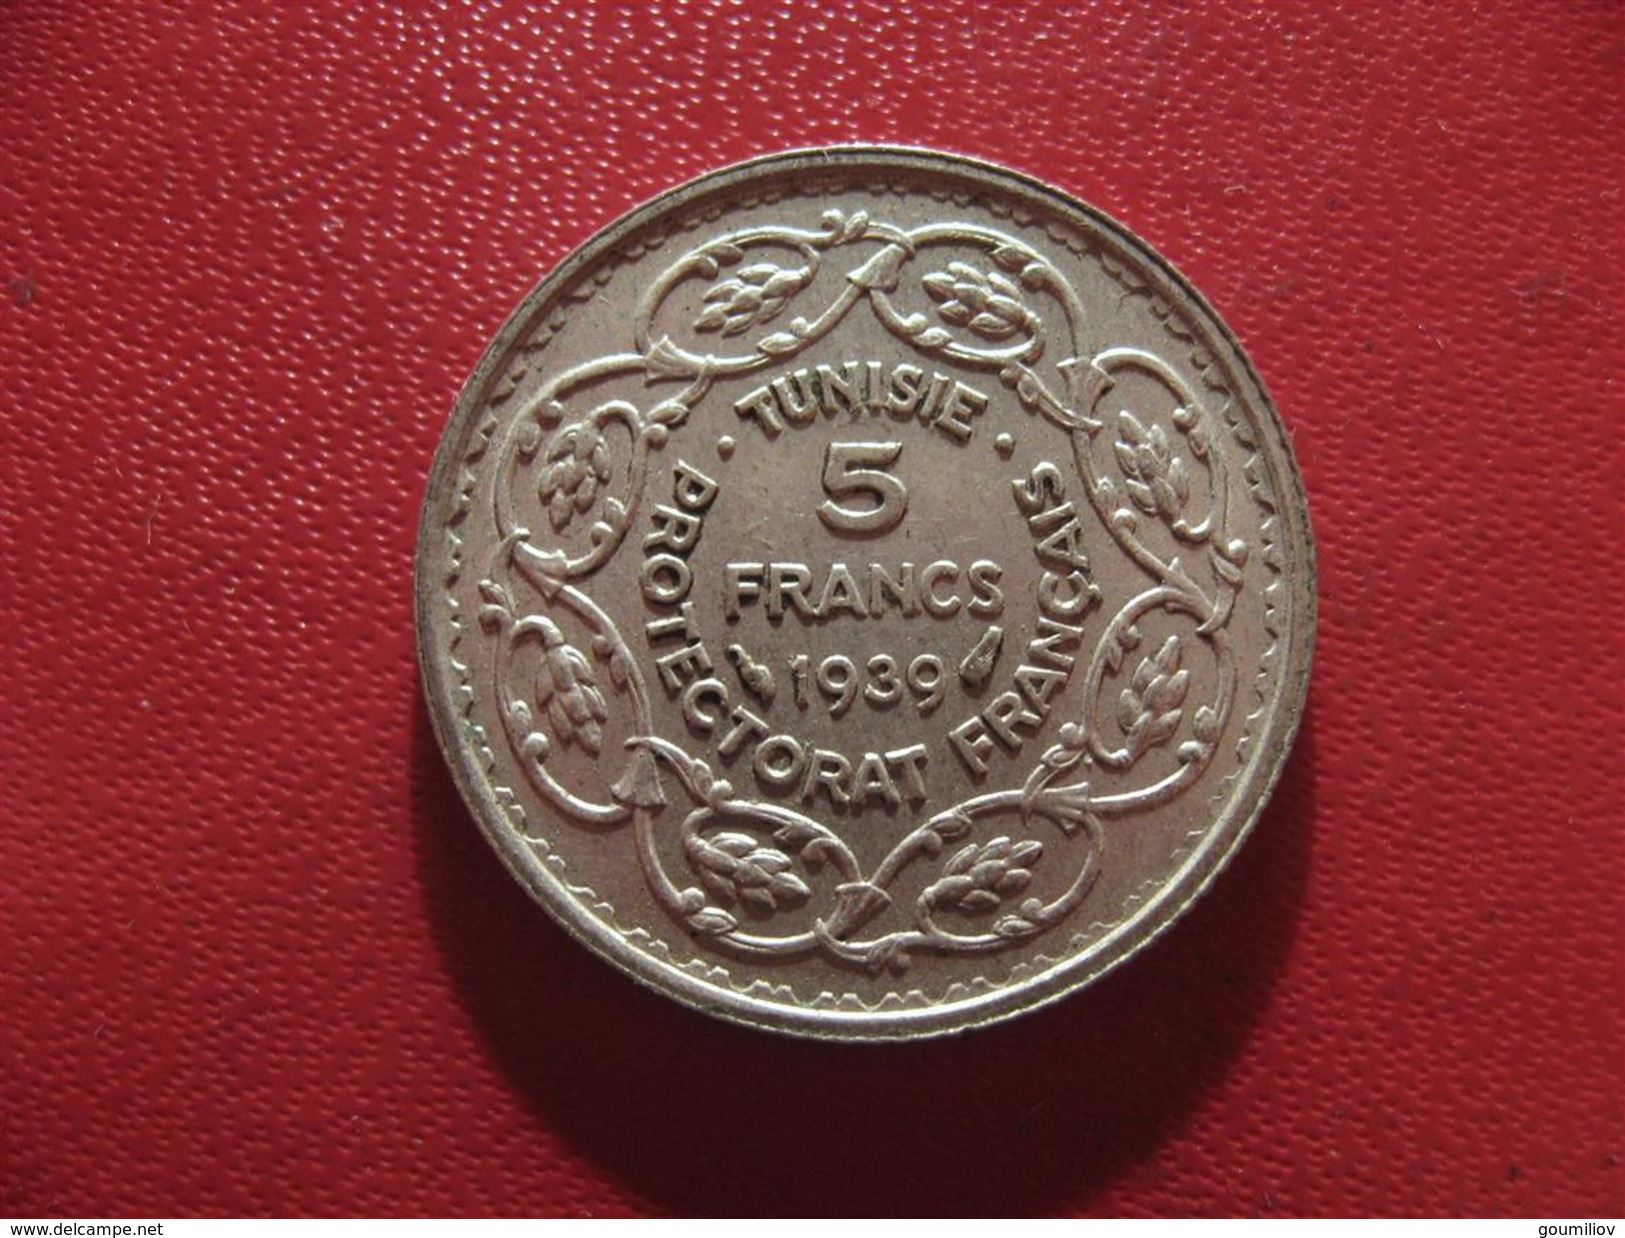 Tunisie - Protectorat Français - 5 Francs 1939 0241 - Tunisie